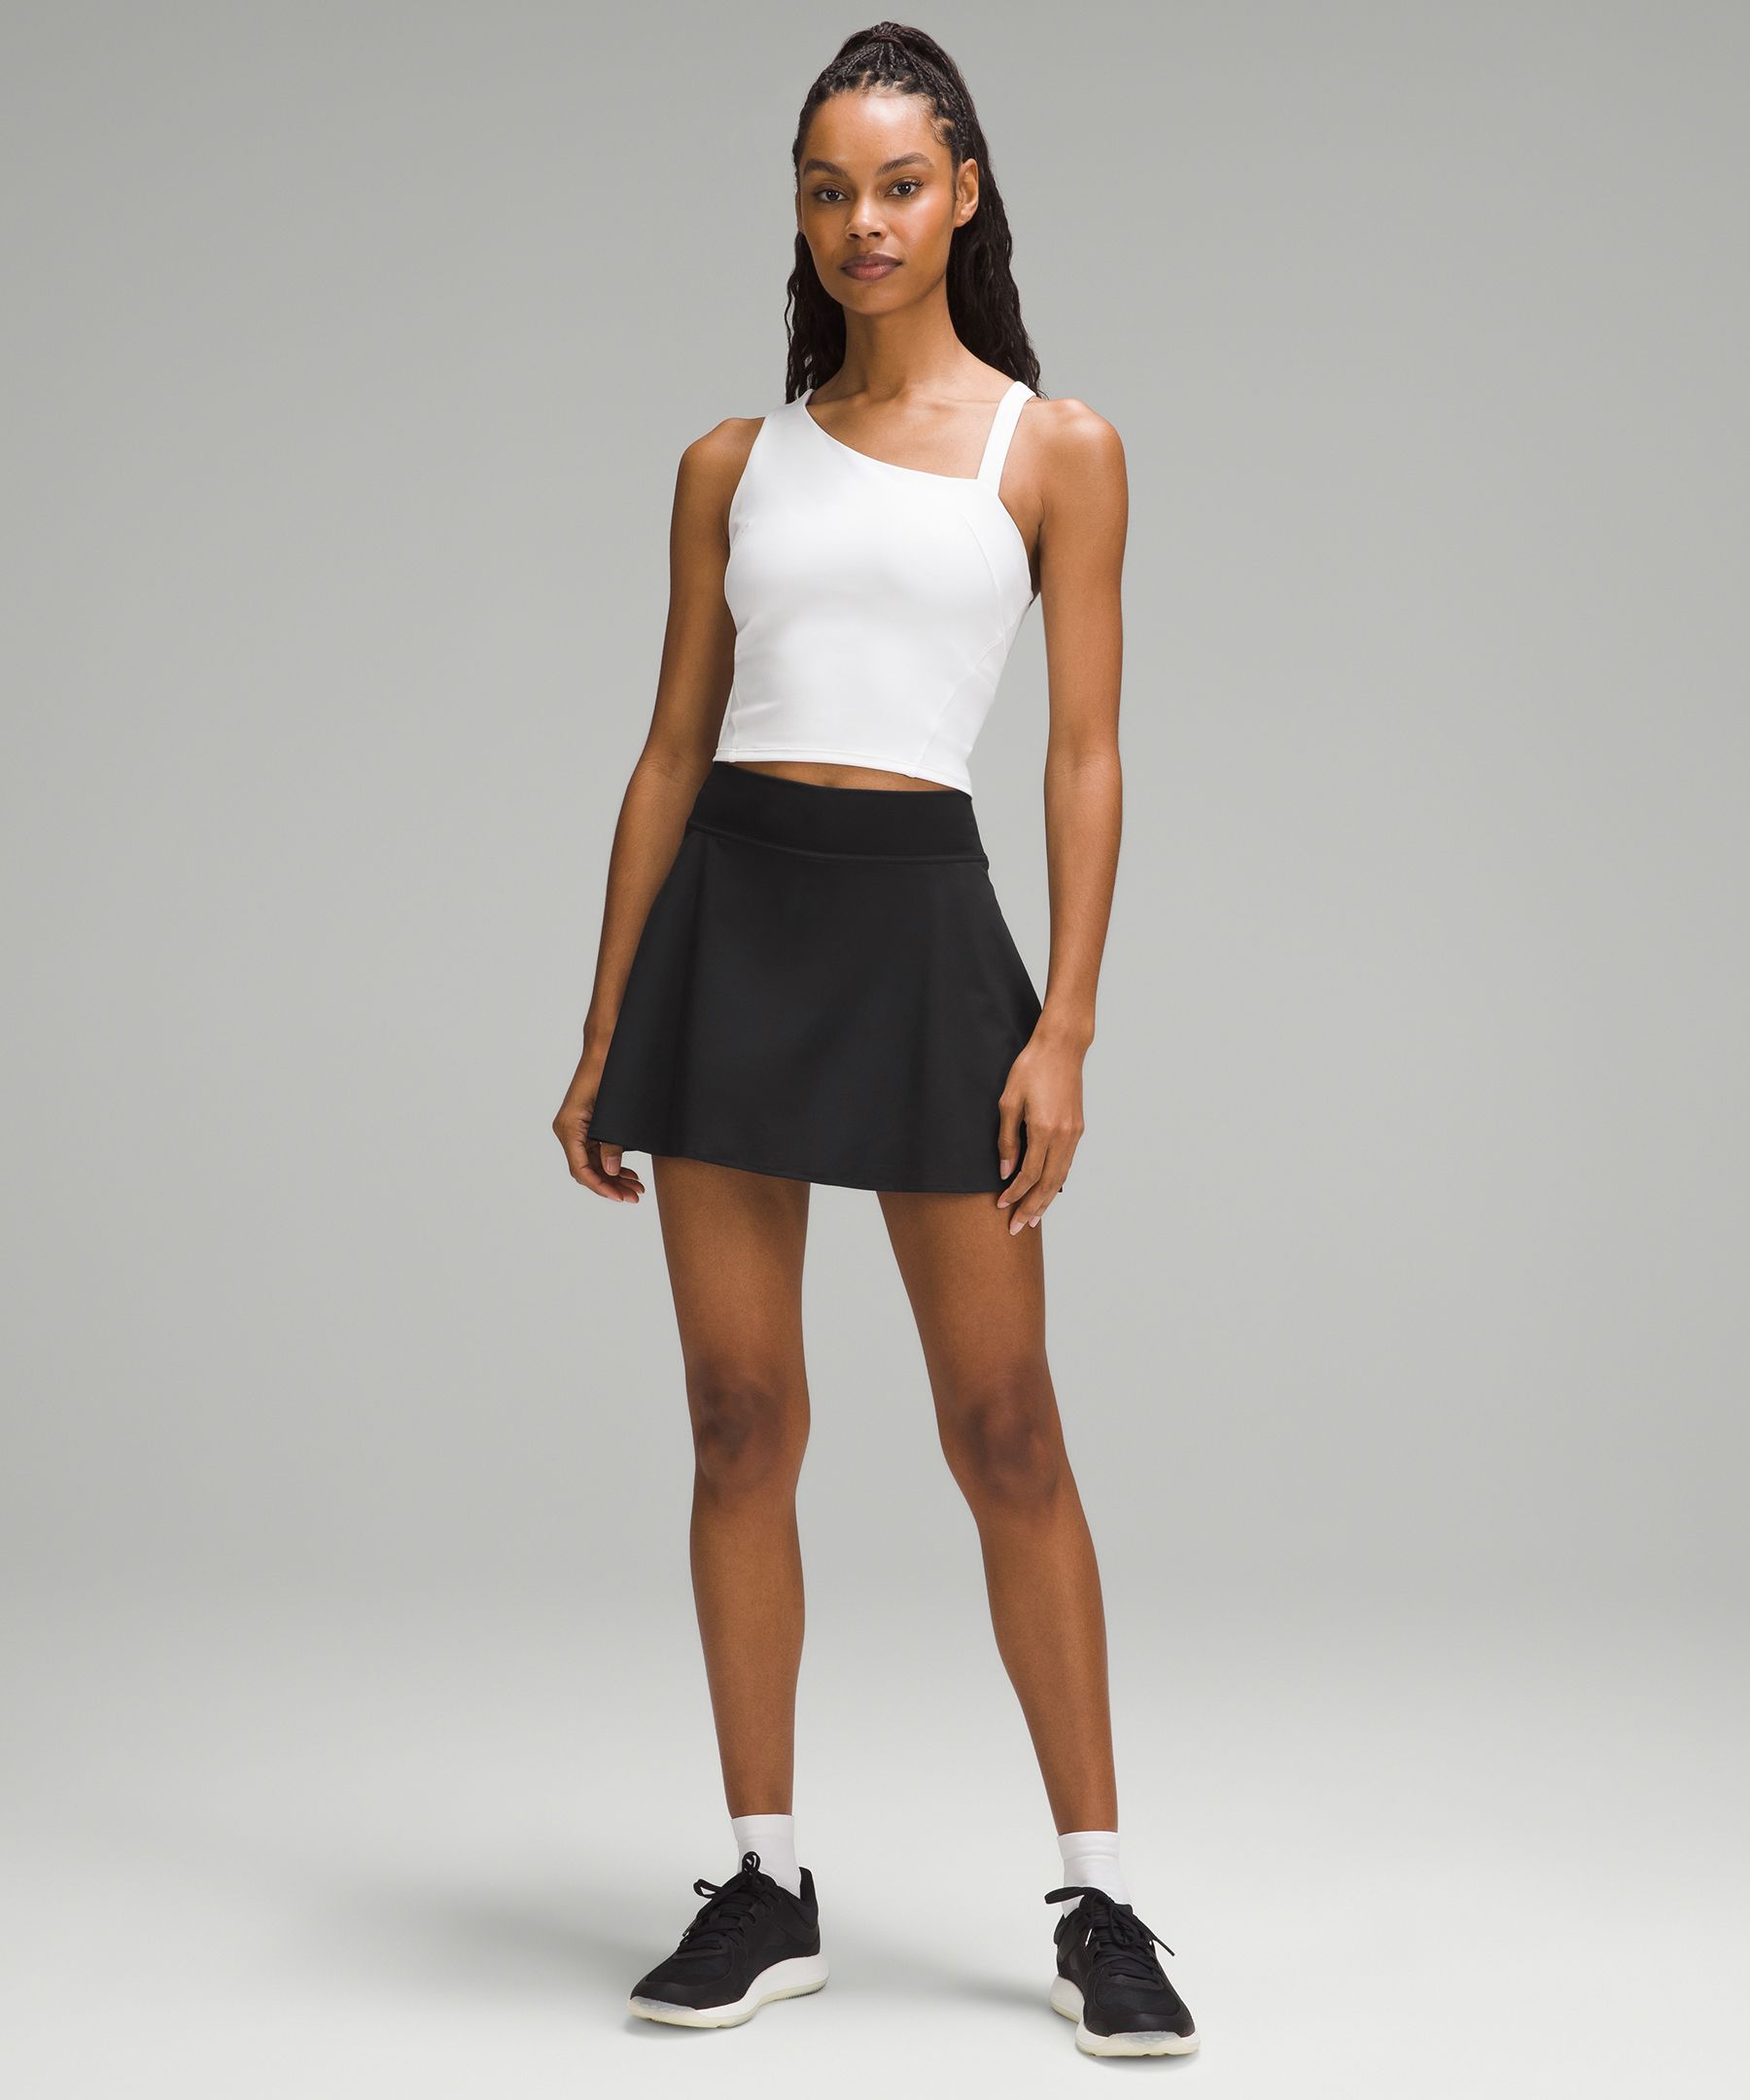 Lightweight High-Rise Tennis Skirt, Women's Skirts